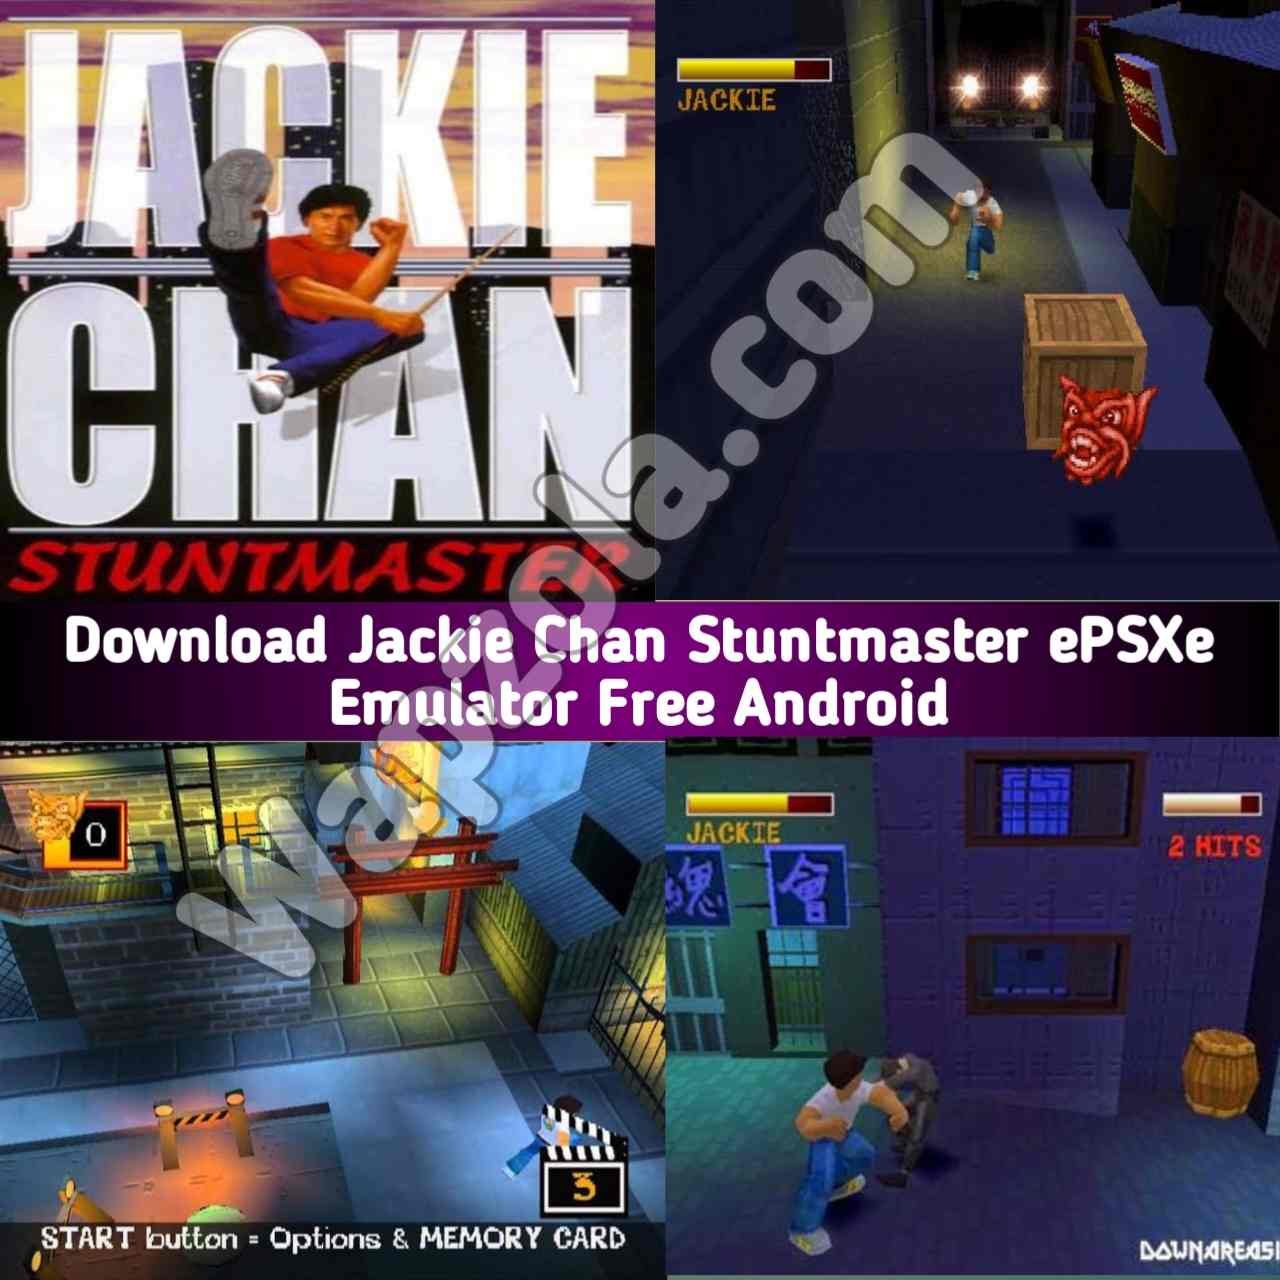 [Descargar] Jackie Chan Stuntmaster ROM (ISO) ePSXe y emulador Fpse (tamaño 35 MB) altamente comprimido – Sony Playstation / PSX / PS1 APK BIN/CUE play en Android y PC 1